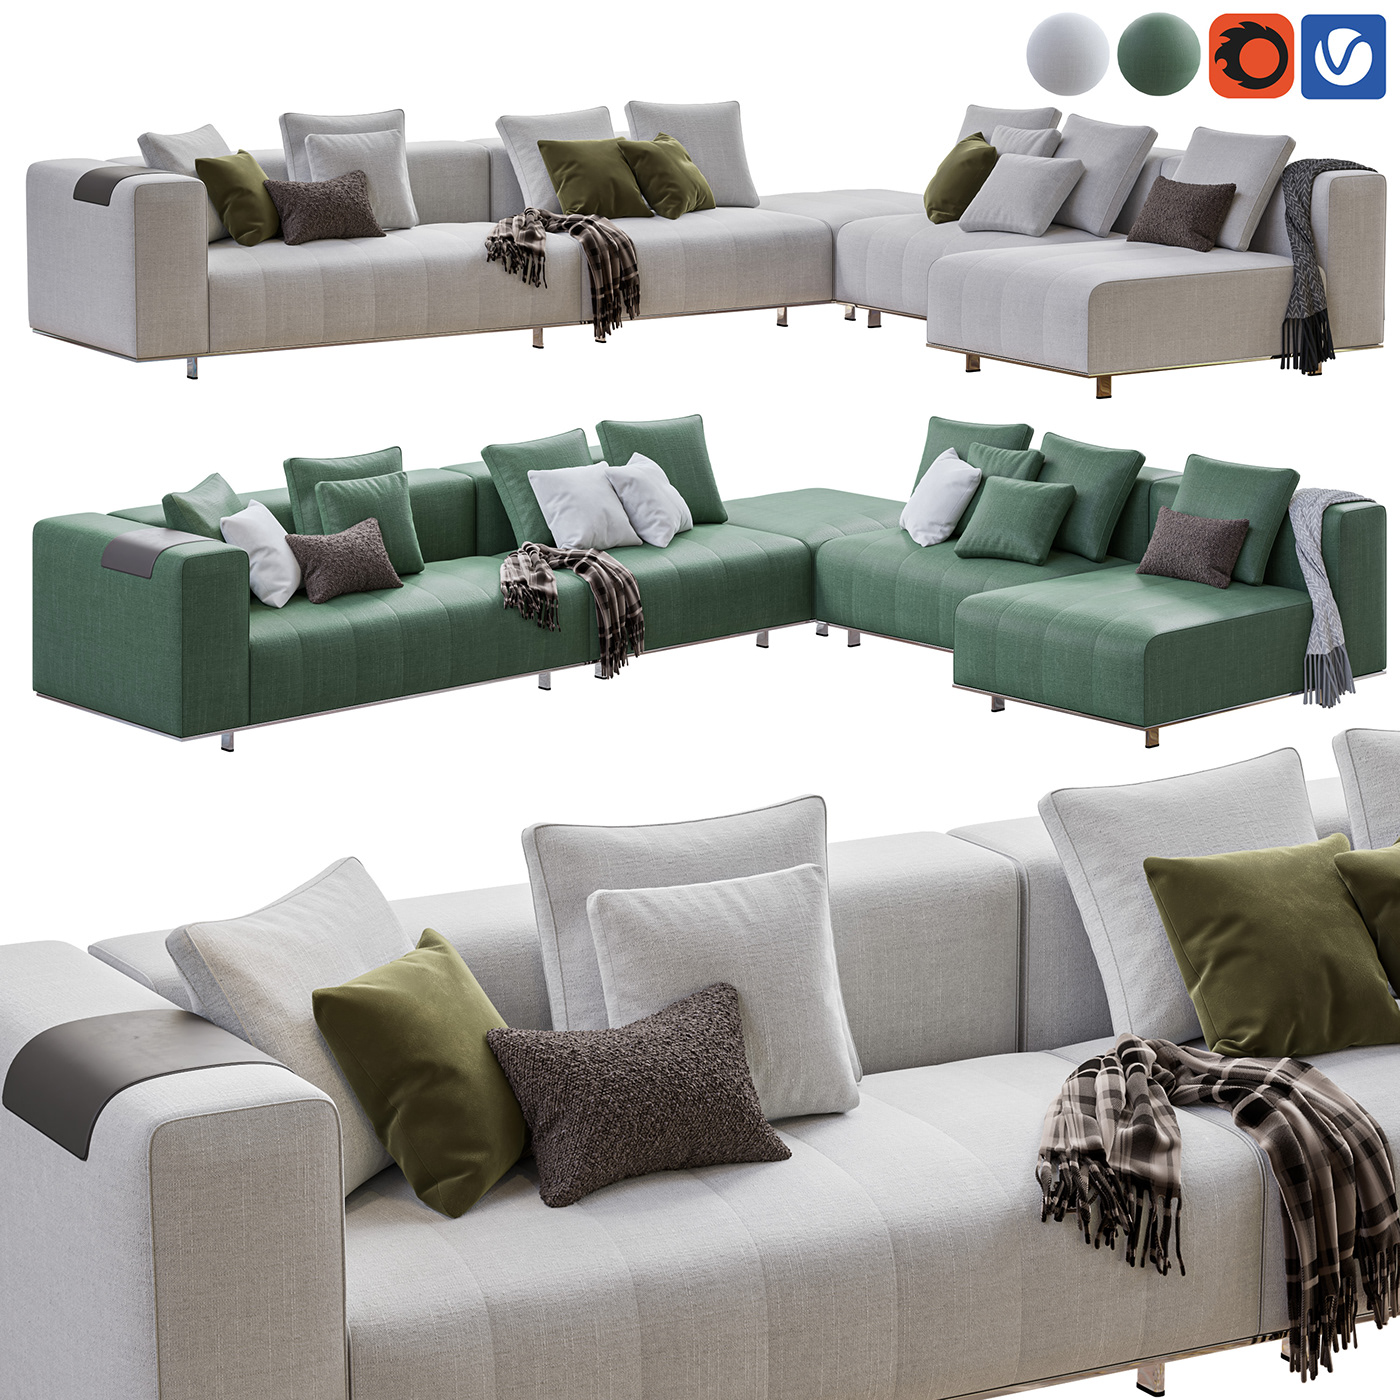 Couch product Minotti minotti furniture visualization archviz CGI corona architecture